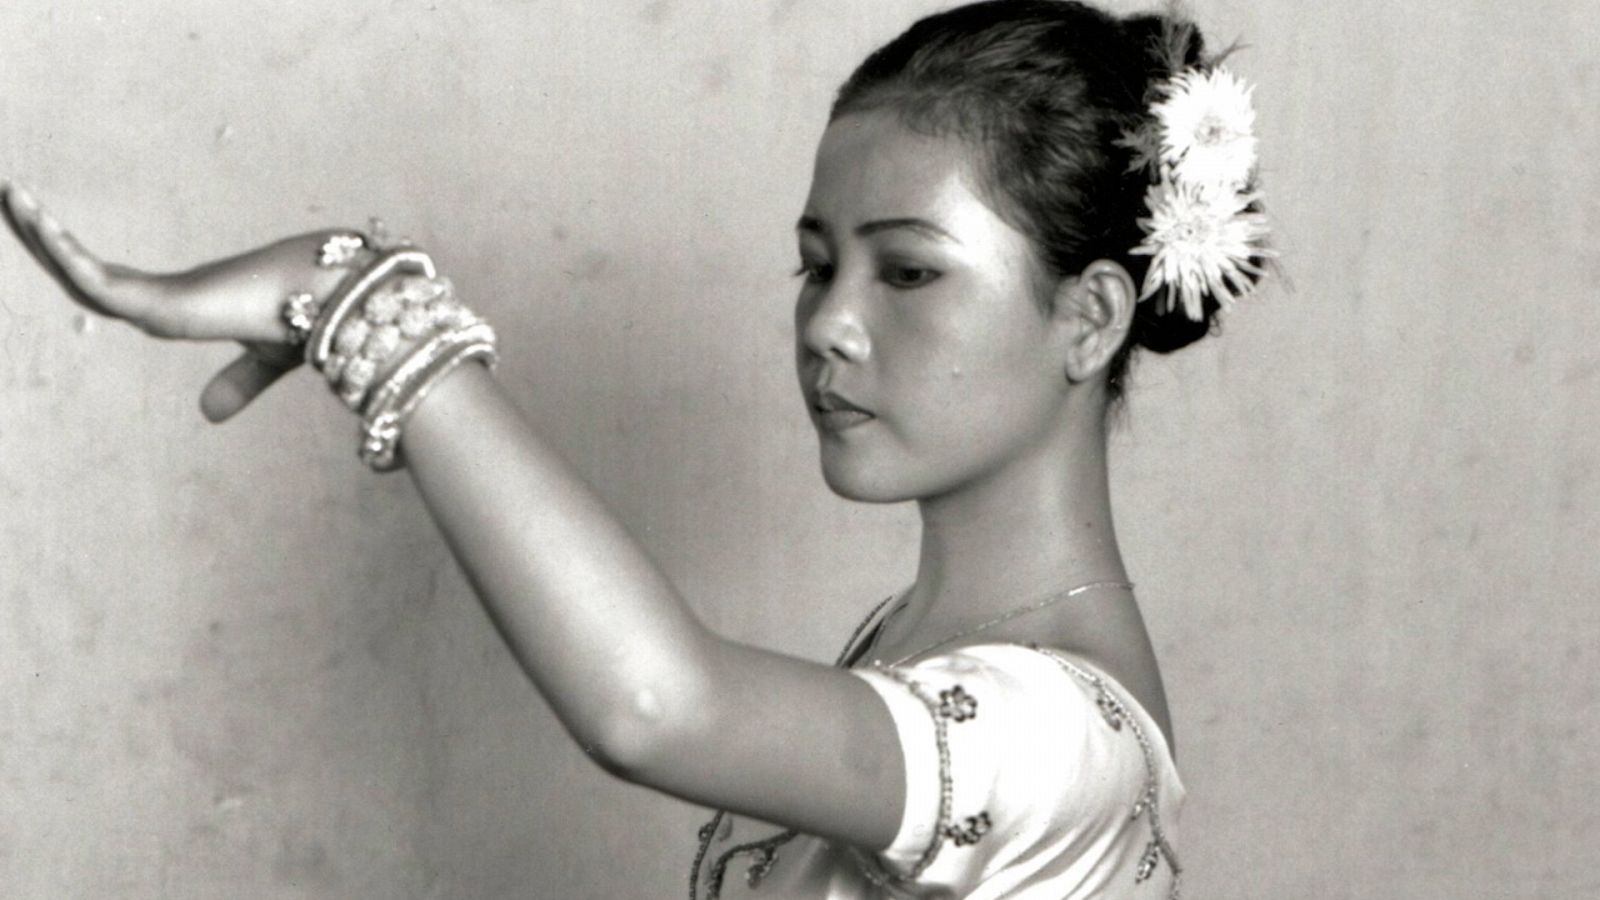 La foto a la bailarina camboyana, de Isabel Muñoz